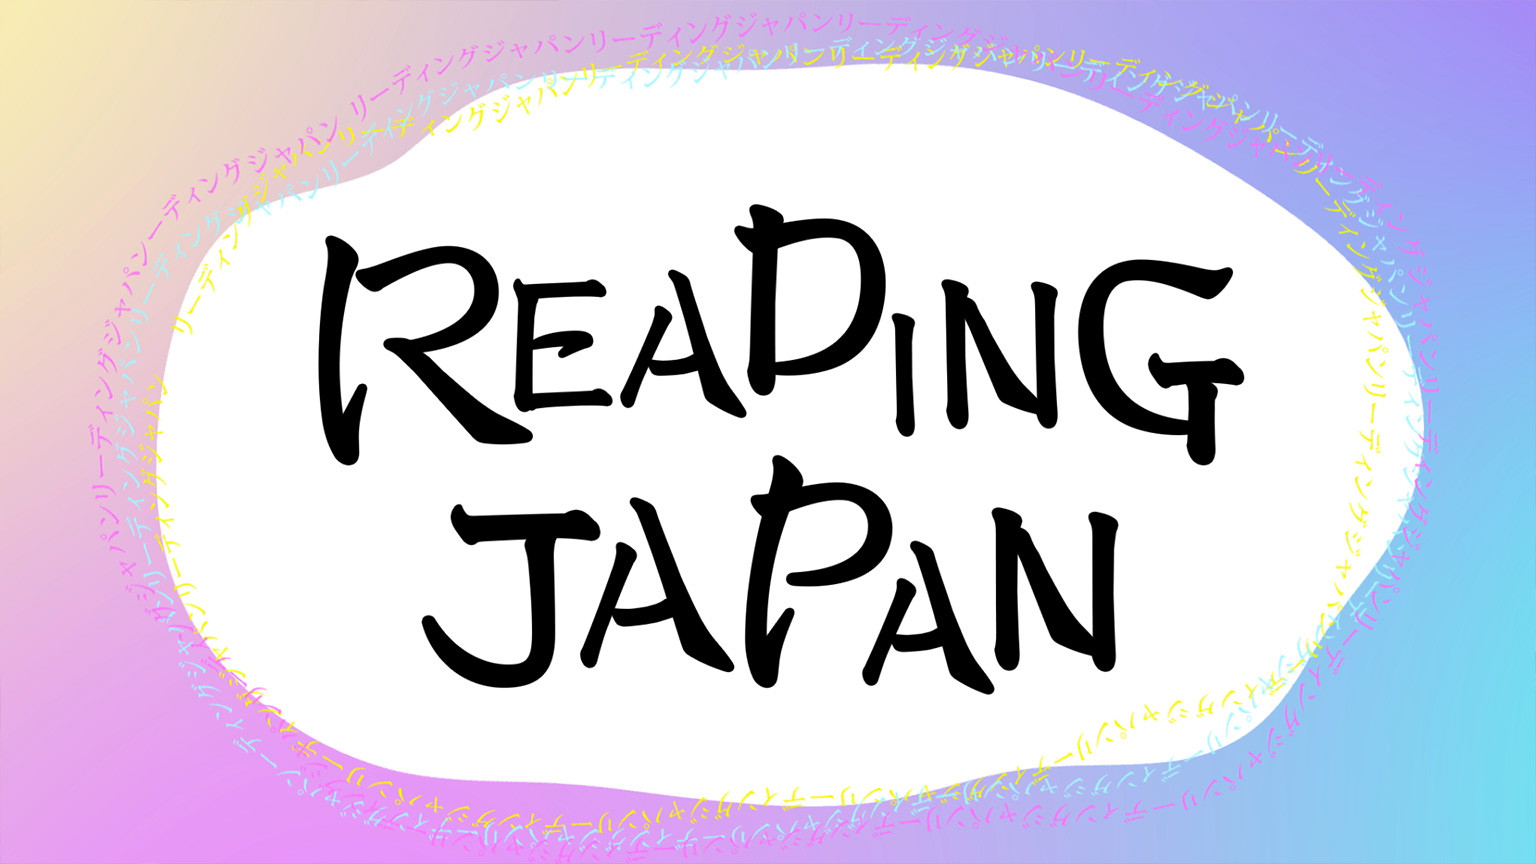 บทอ่านฟังเพลิน
Reading Japan